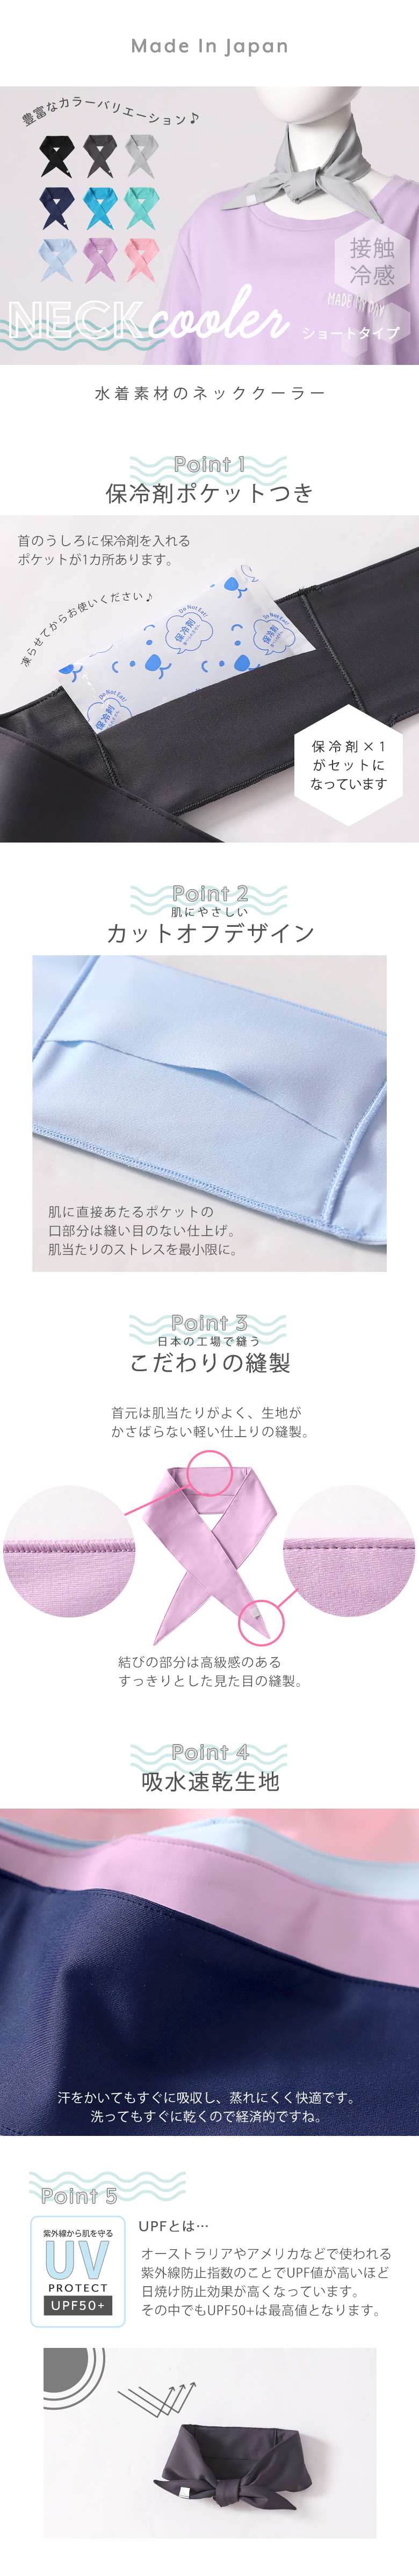 激安人気新品 ネッククーラー 保冷剤 日本製 uvカット 冷感 水着素材 レディース